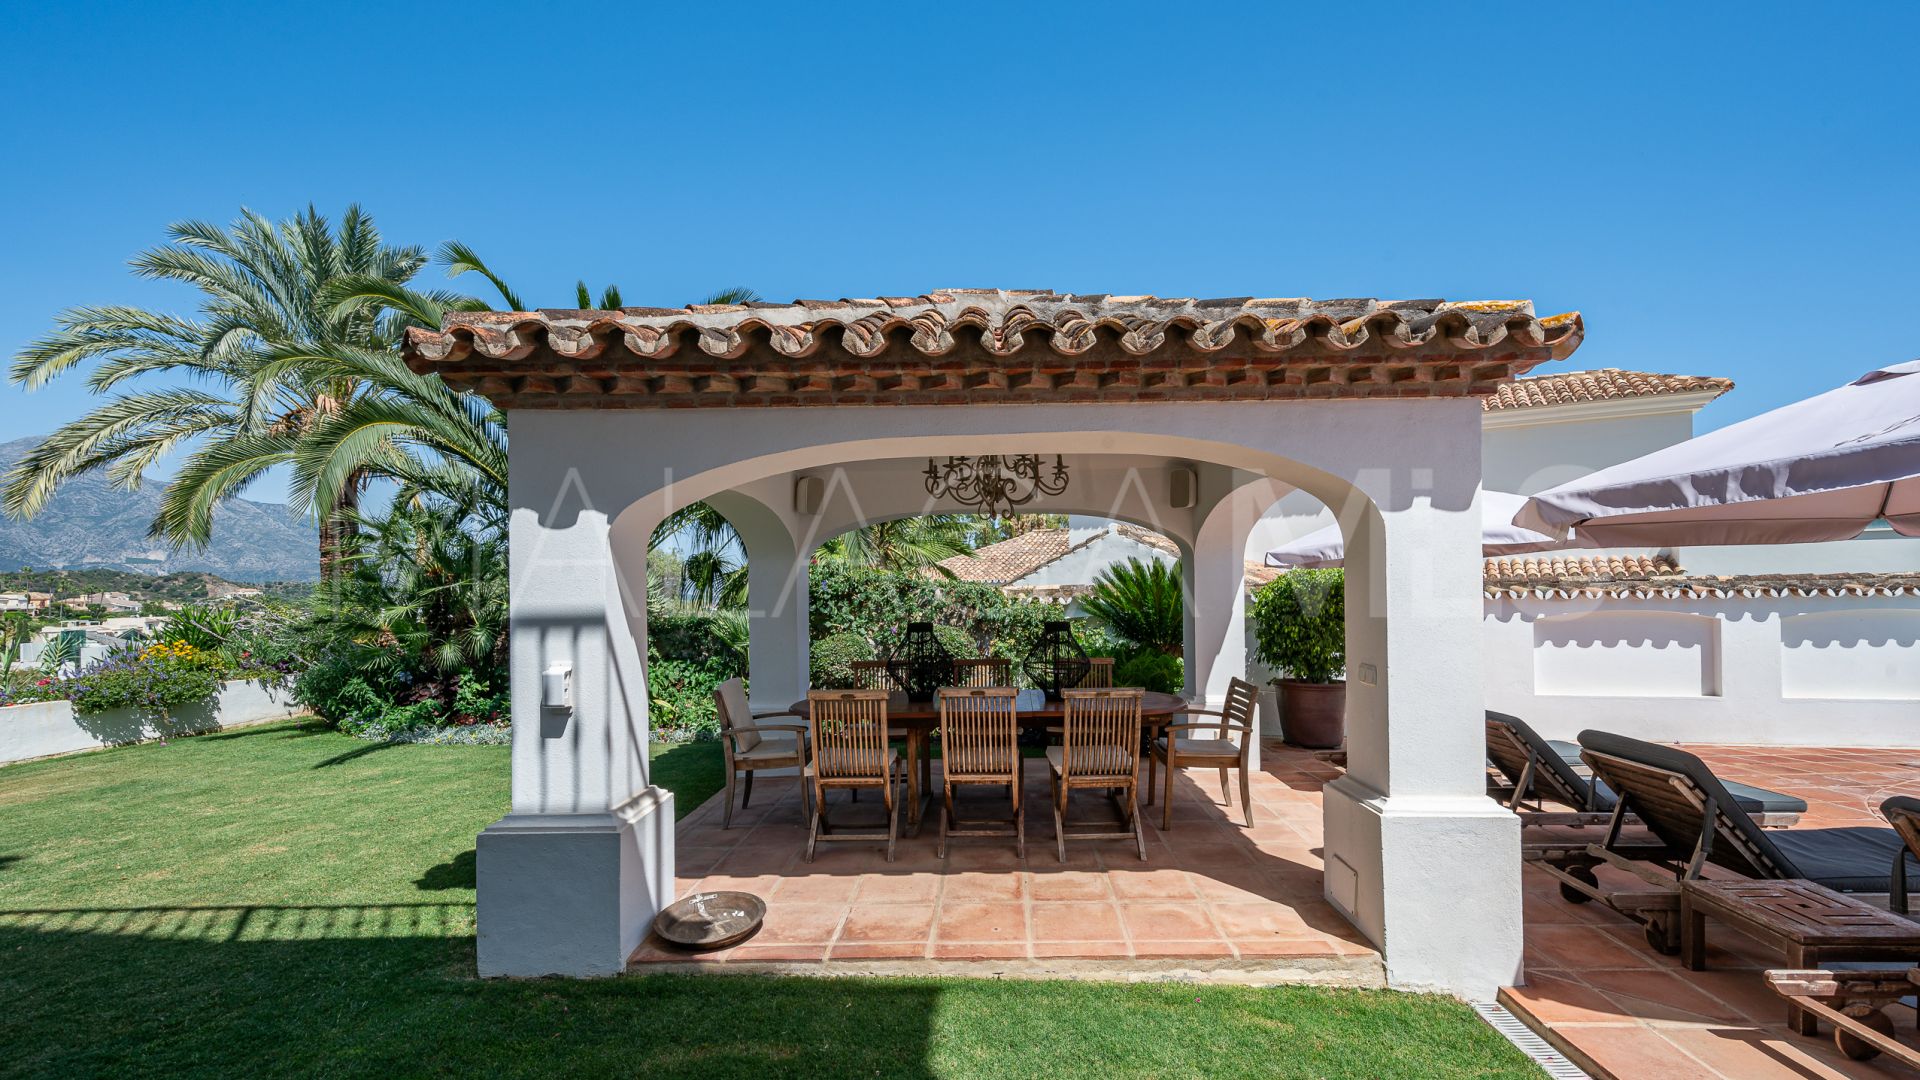 Villa for sale in El Herrojo